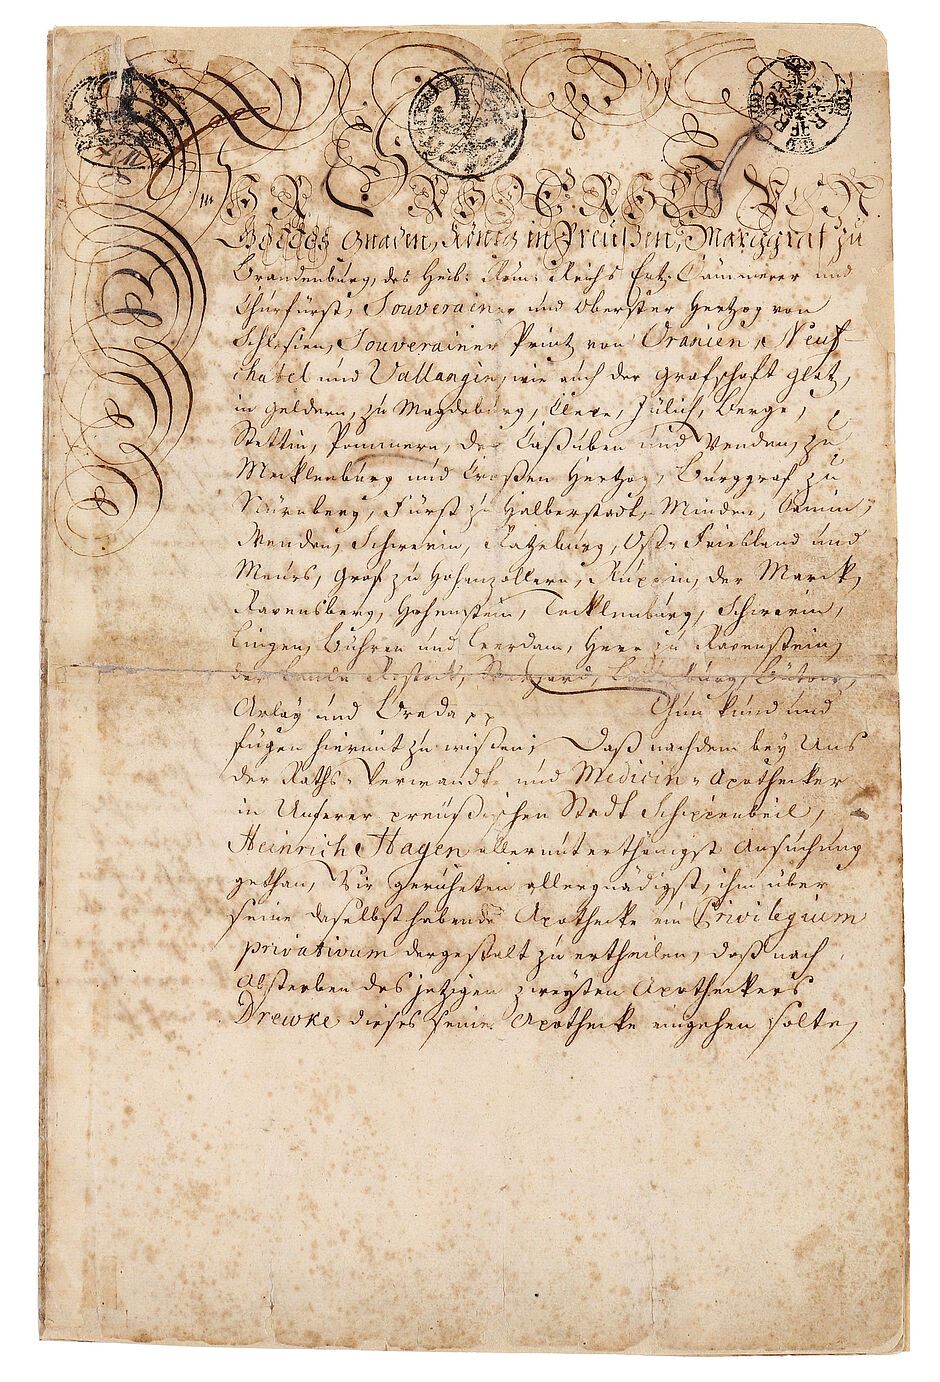 Privilegs der Adler-Apotheke Schippenbeil (Sępopol), erteilt 1744 von Friedrich II., Abschrift von 1790 (Copyright: Dt. Apotheken Museum-Stiftung, Heidelberg. Inv.-Nr. VII A 2327, 1r)